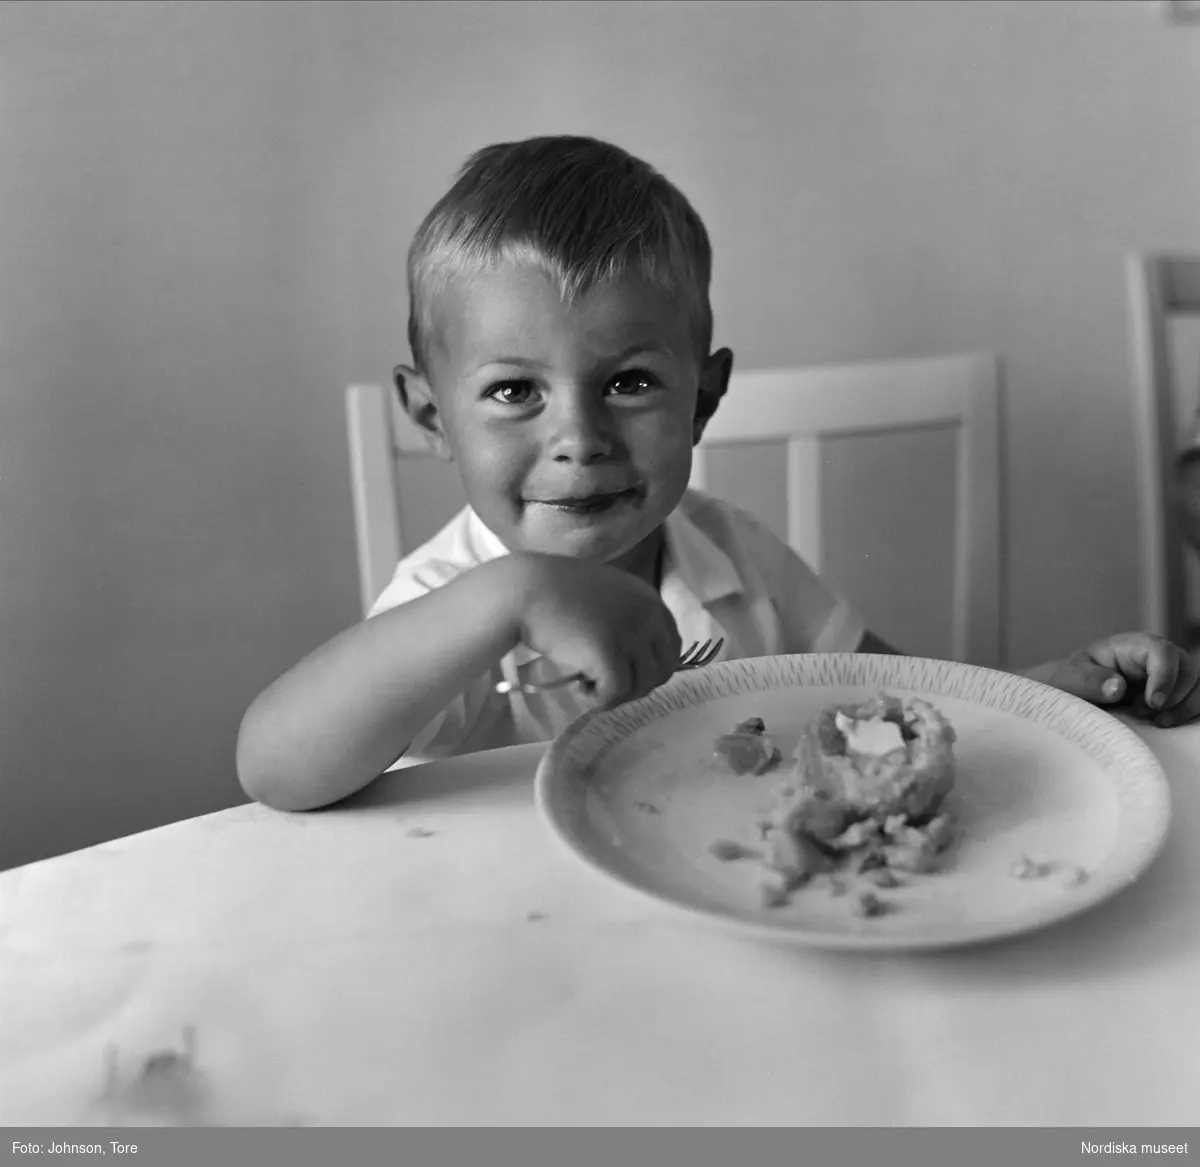 Liten pojke sitter vid matbord med gaffel i handen och mattallrik framför sig. "Pitepalt i Öjebyn".